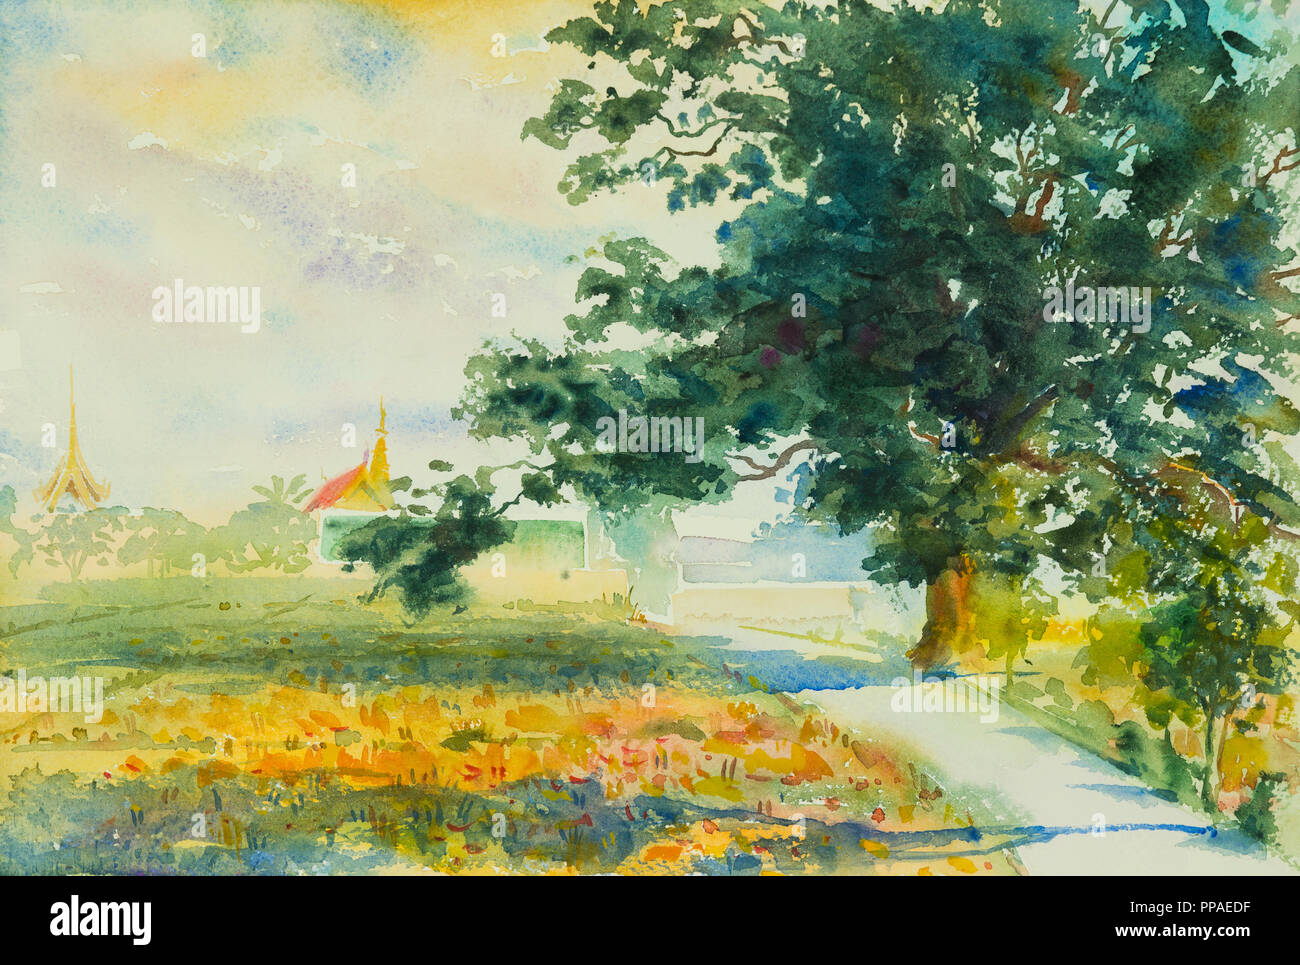 Original Watercolor Landscape Painting Original Watercolor Painting